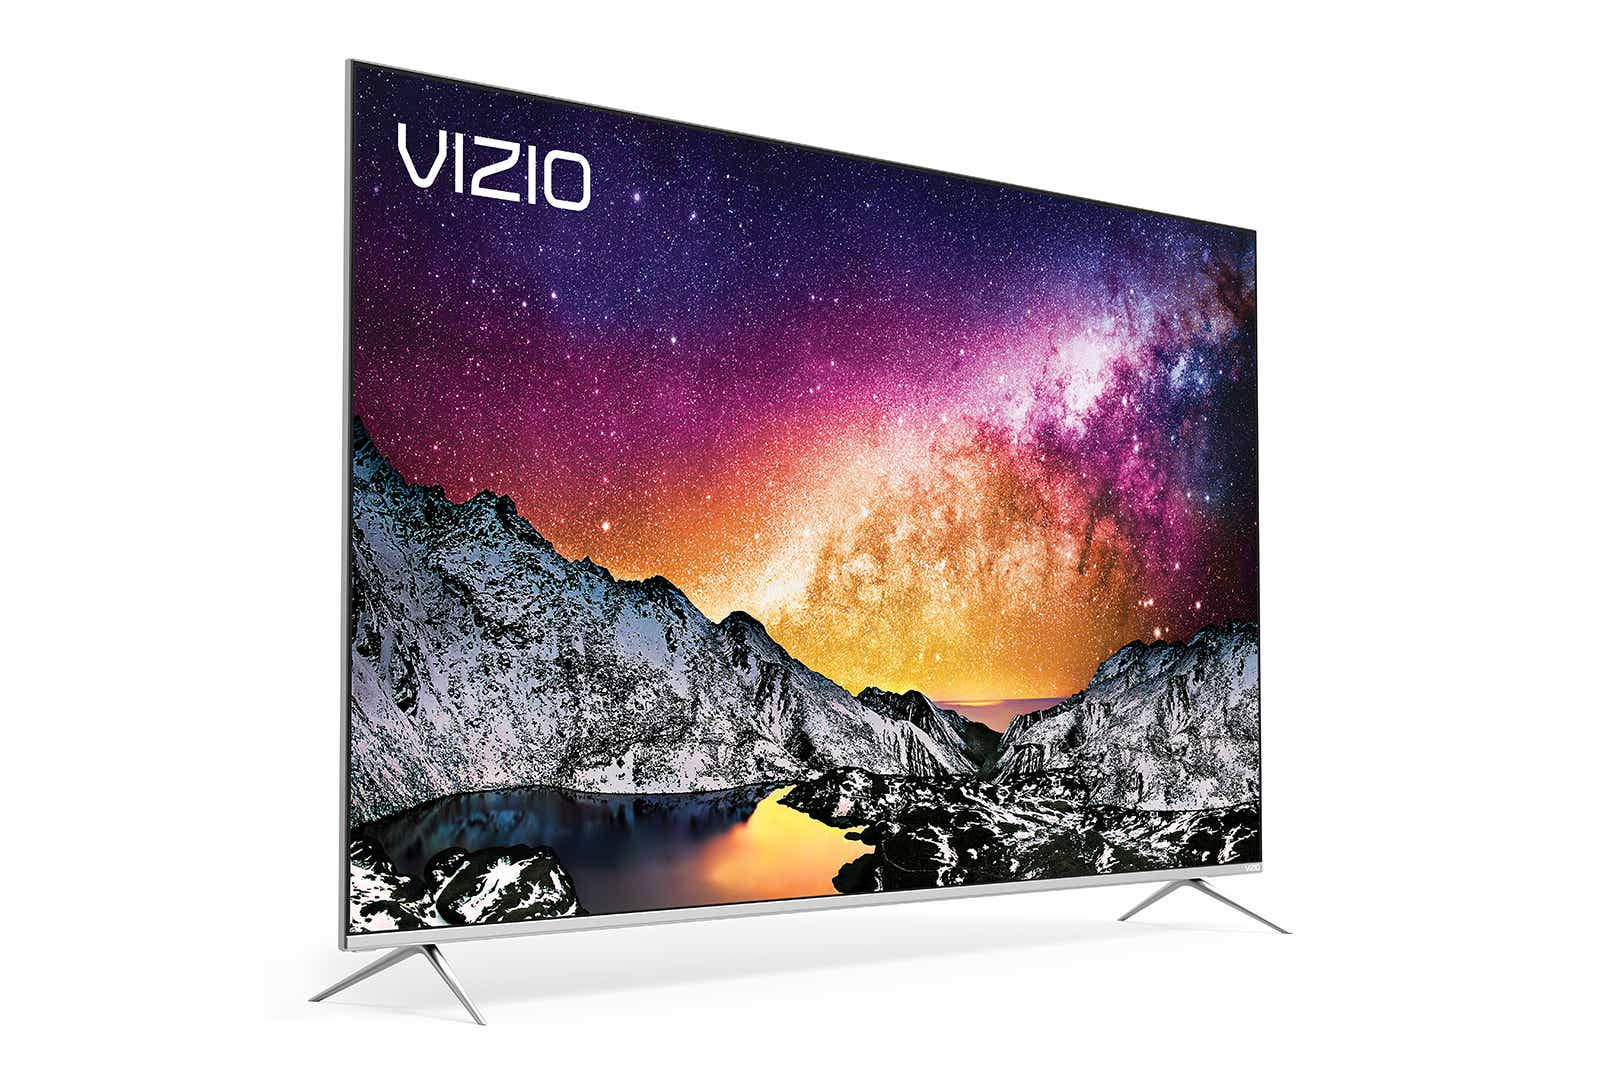 Vizio P-series 4K UHD LCD TV (65-inch class, model P65-F1)